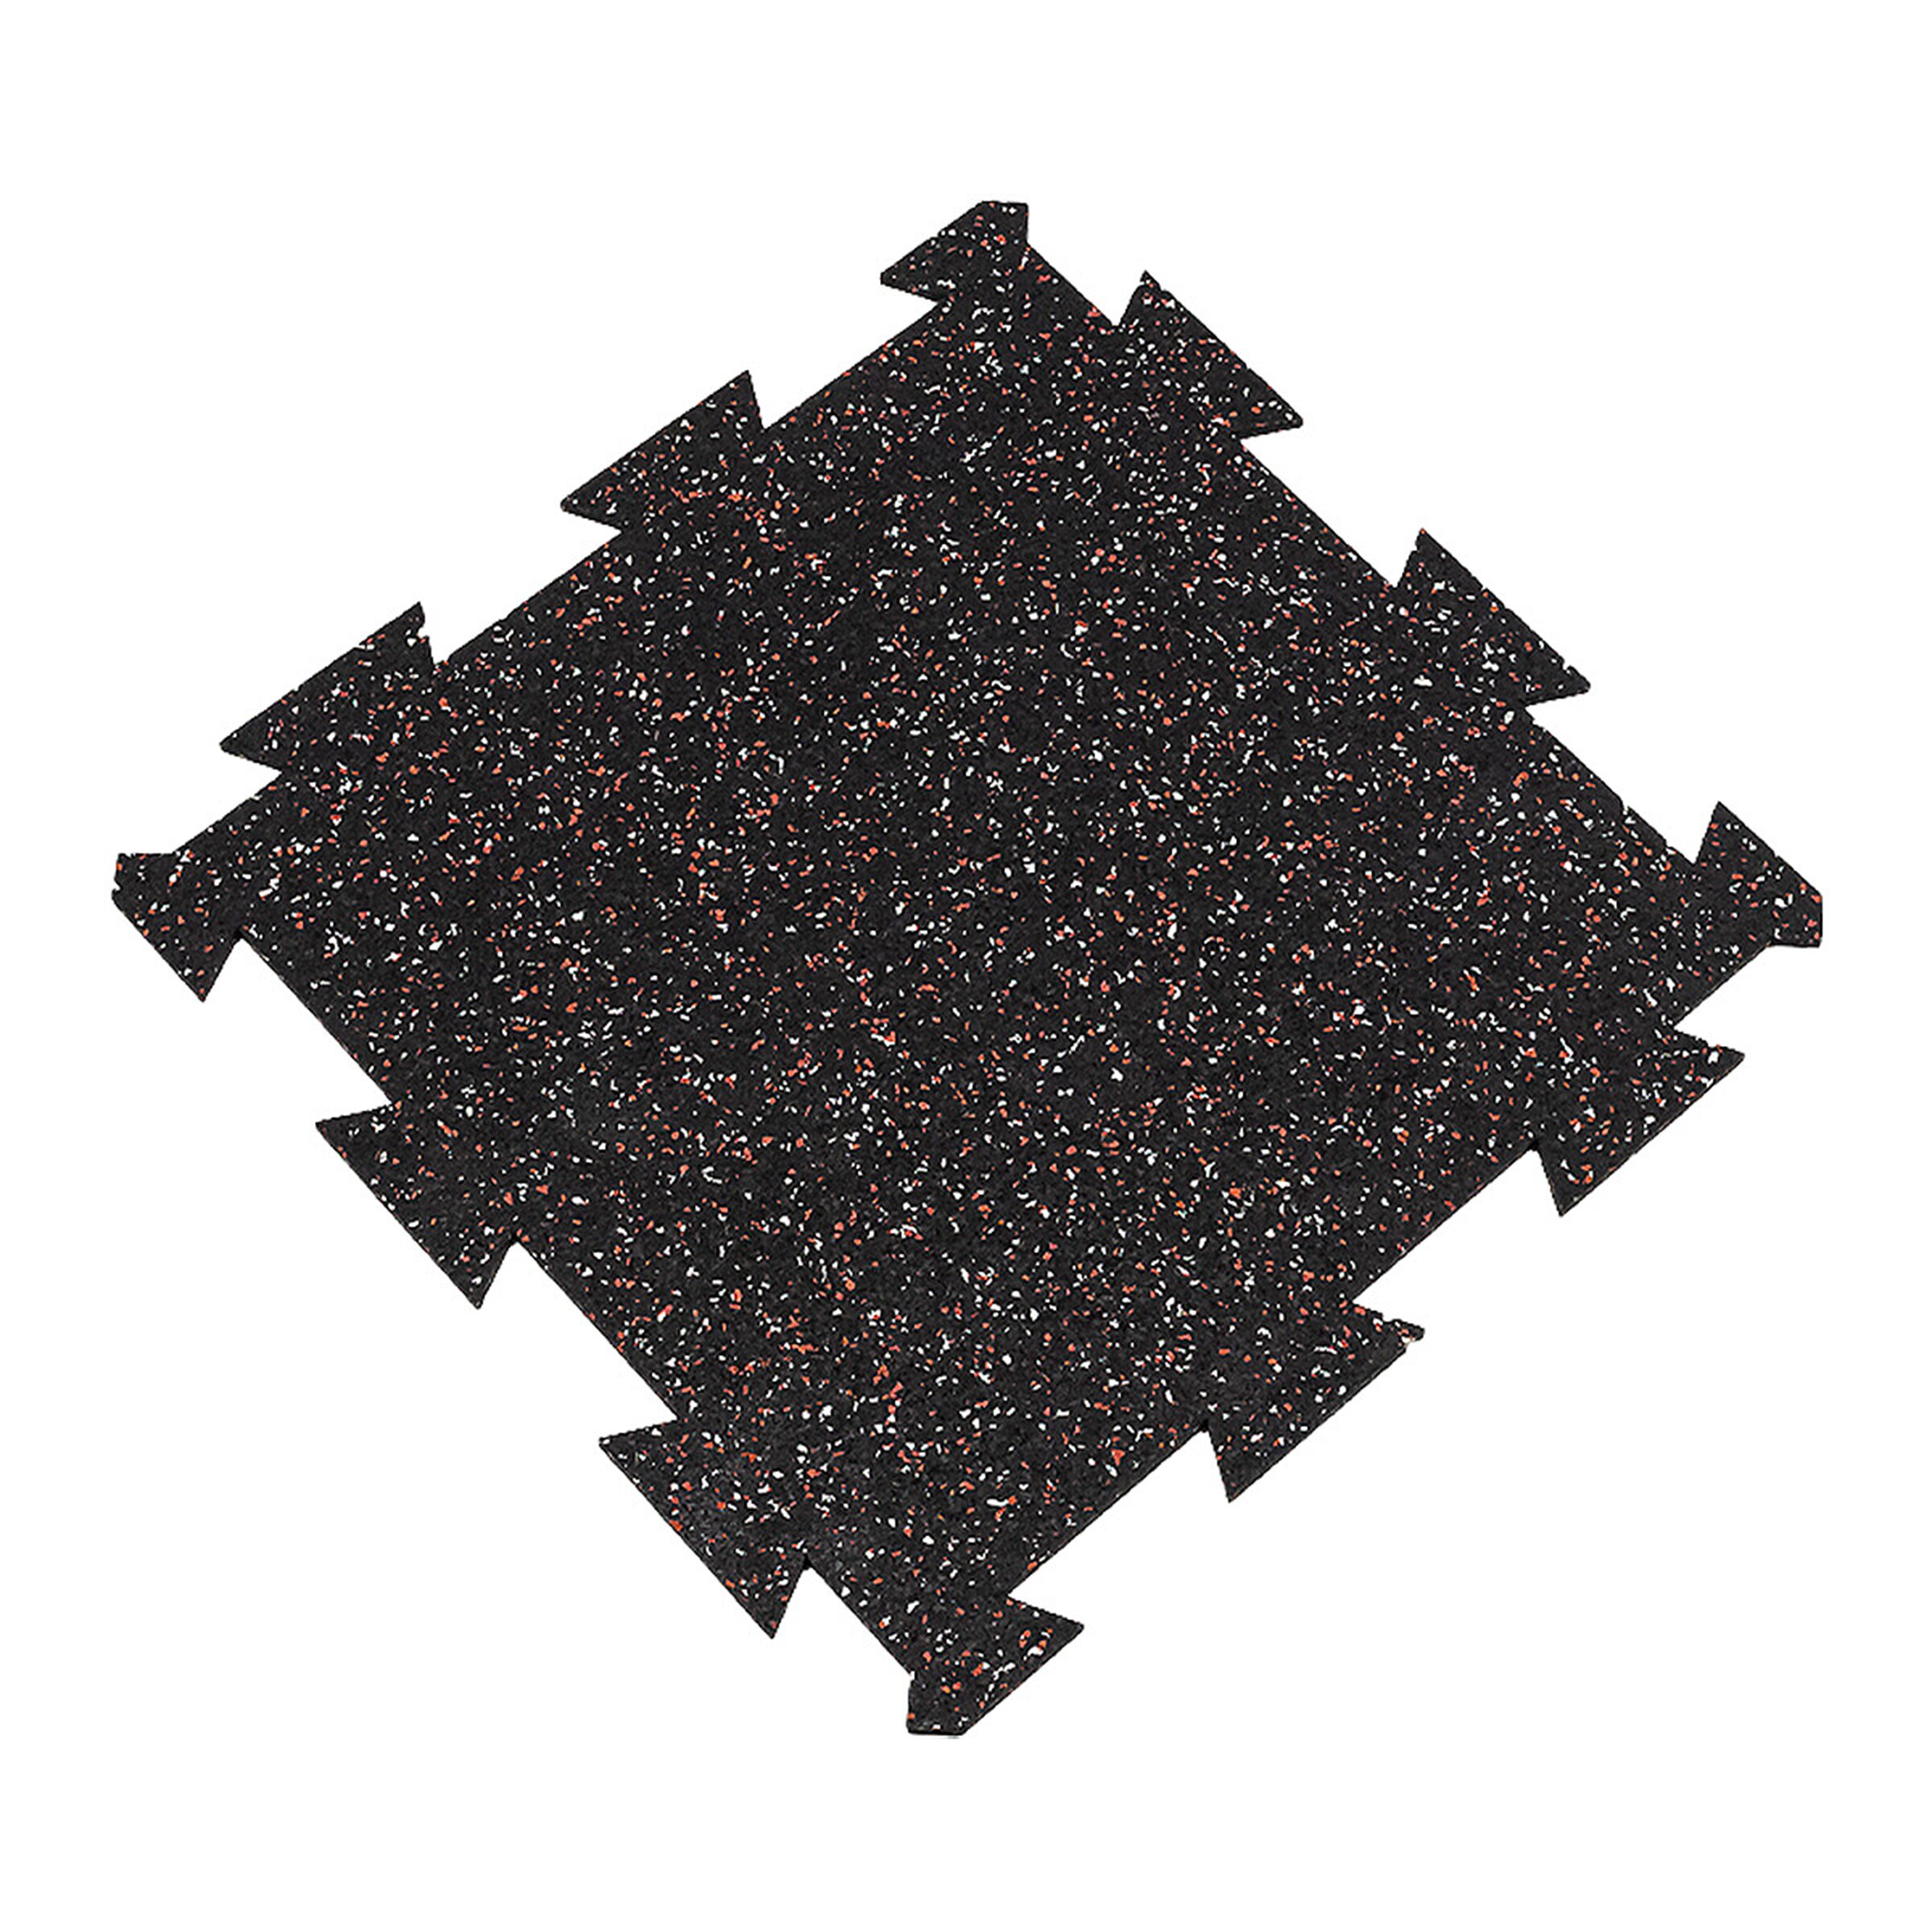 Čierno-bielo-červená gumová modulová puzzle dlažba (stred) FLOMA FitFlo SF1050 - dĺžka 50 cm, šírka 50 cm, výška 1 cm